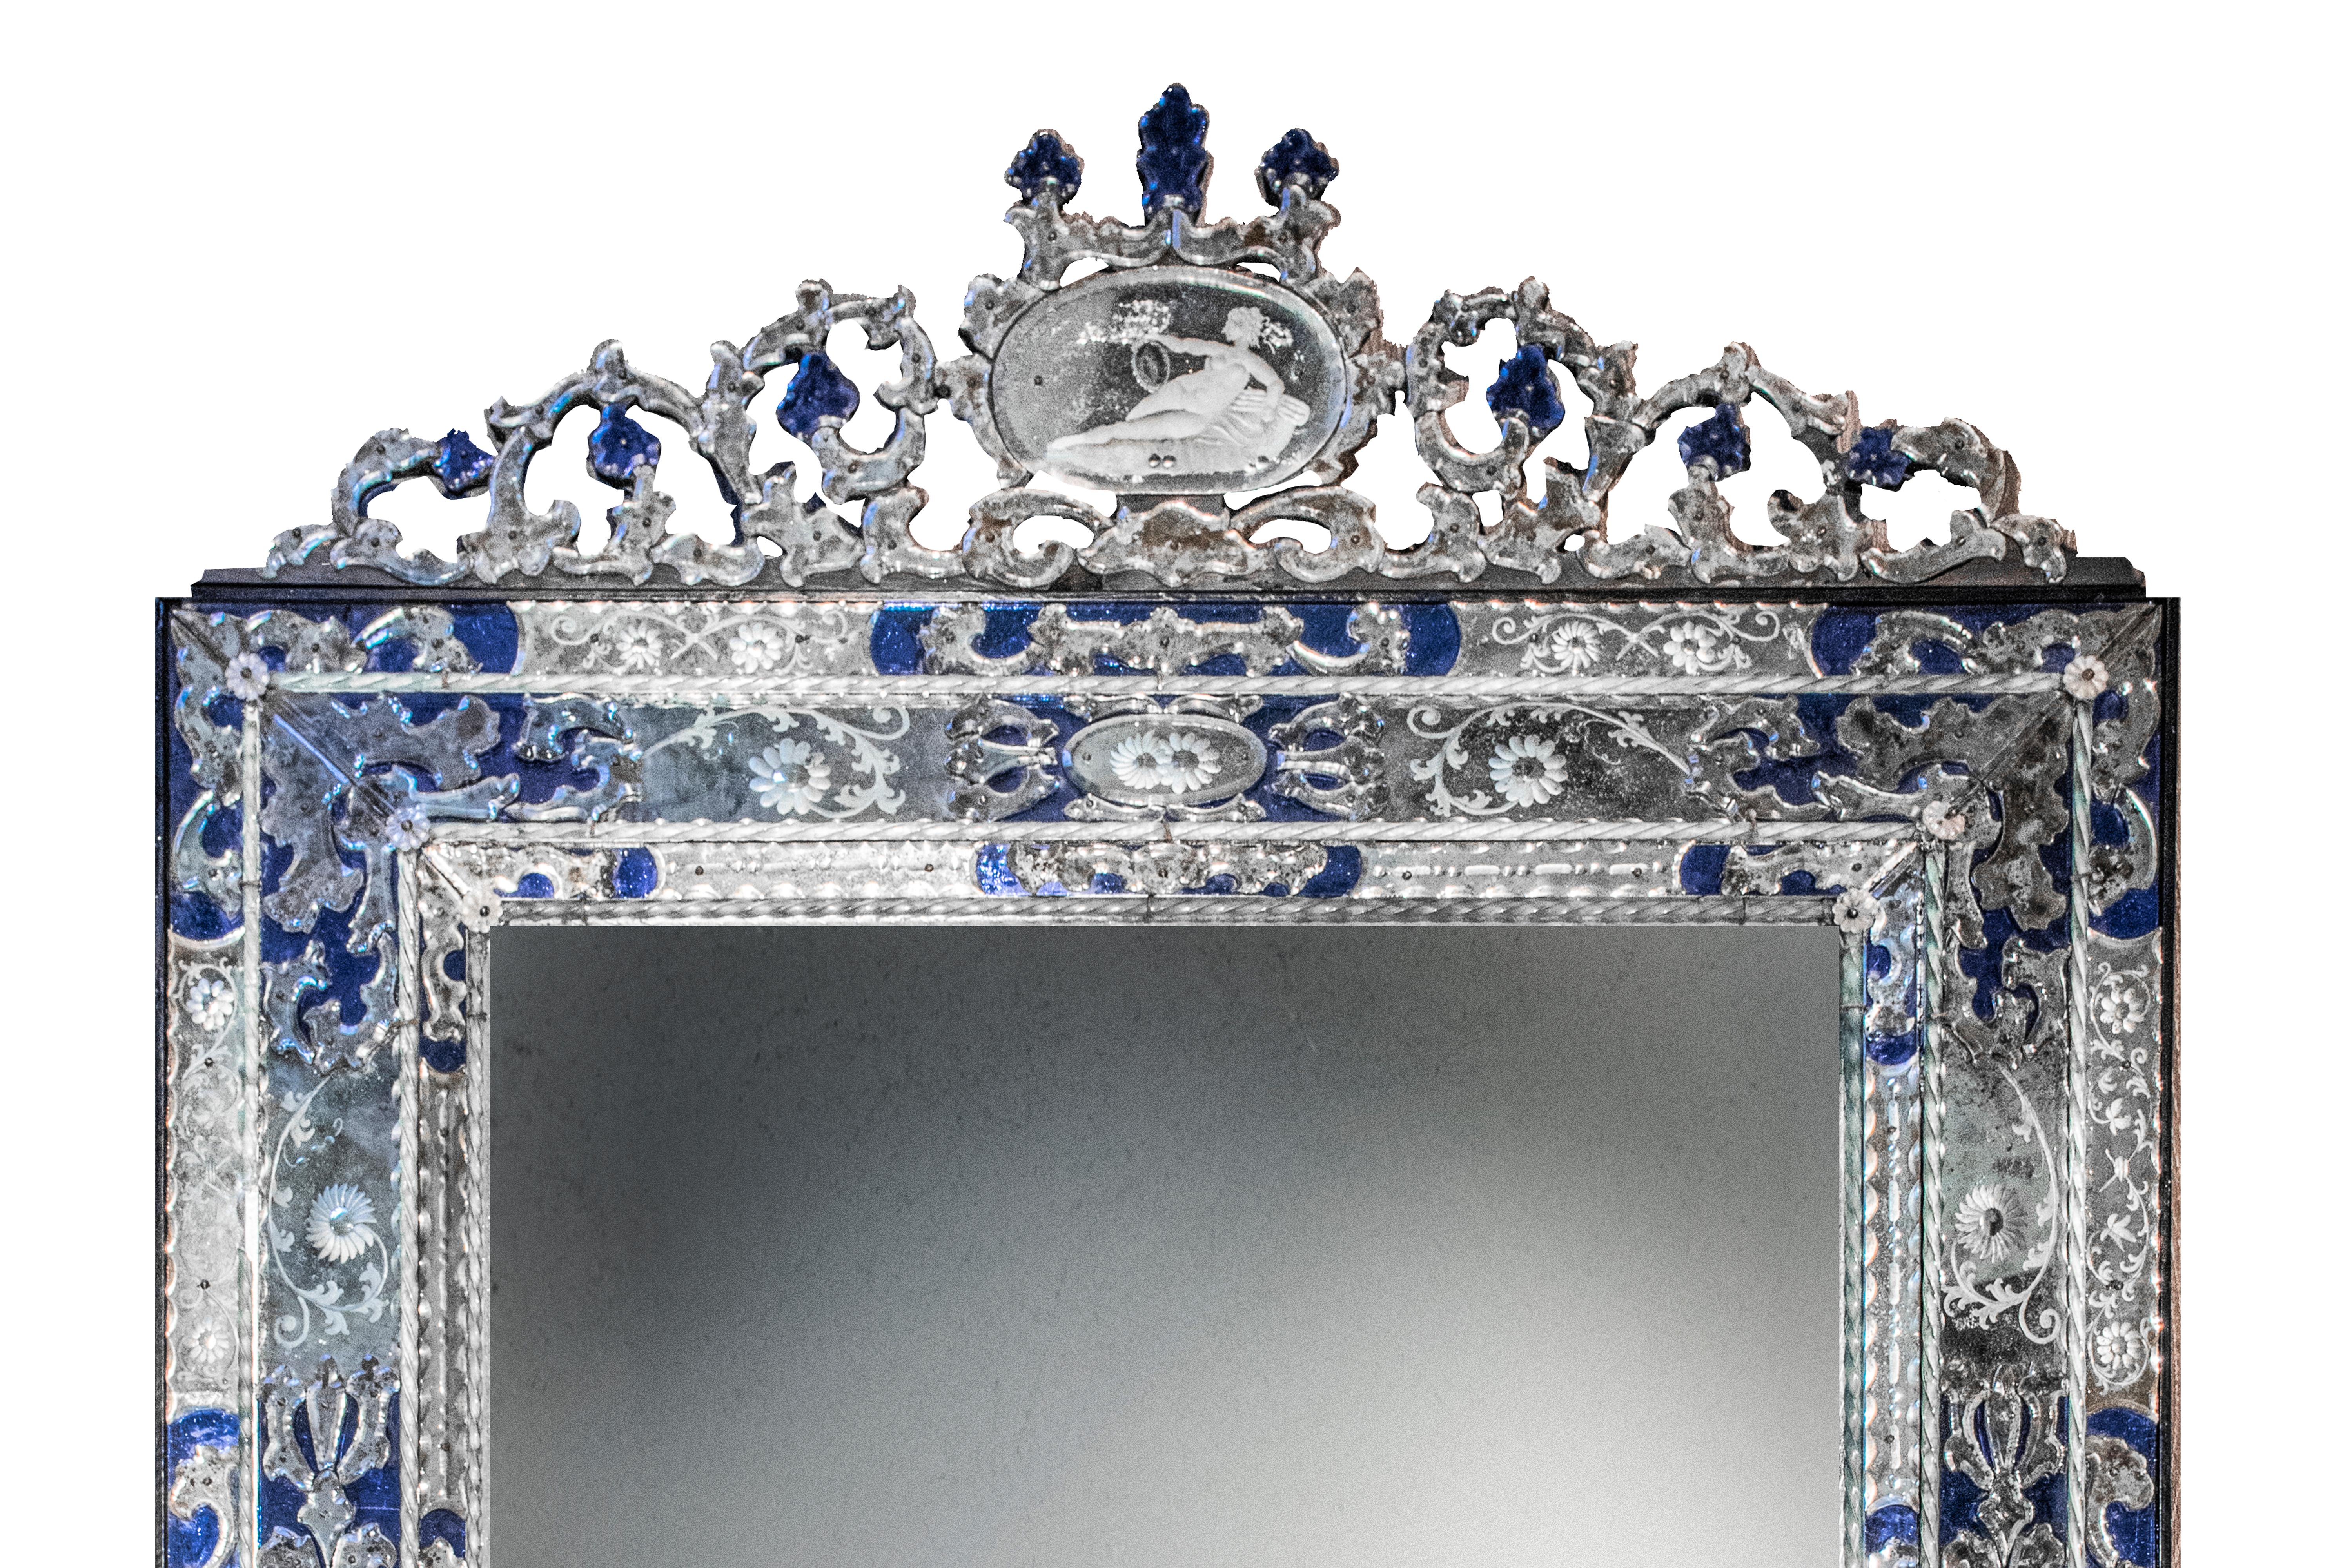 Ein Paar spektakuläre große antike venezianische Spiegel. Montiert in breiten rechteckigen Rahmen mit säuregeätzten floralen Motiven und blau gefärbten Overlay-Elementen sowie gedrehten Murano-Glasperlen. Die Oberteile der Rahmen weisen kunstvolle